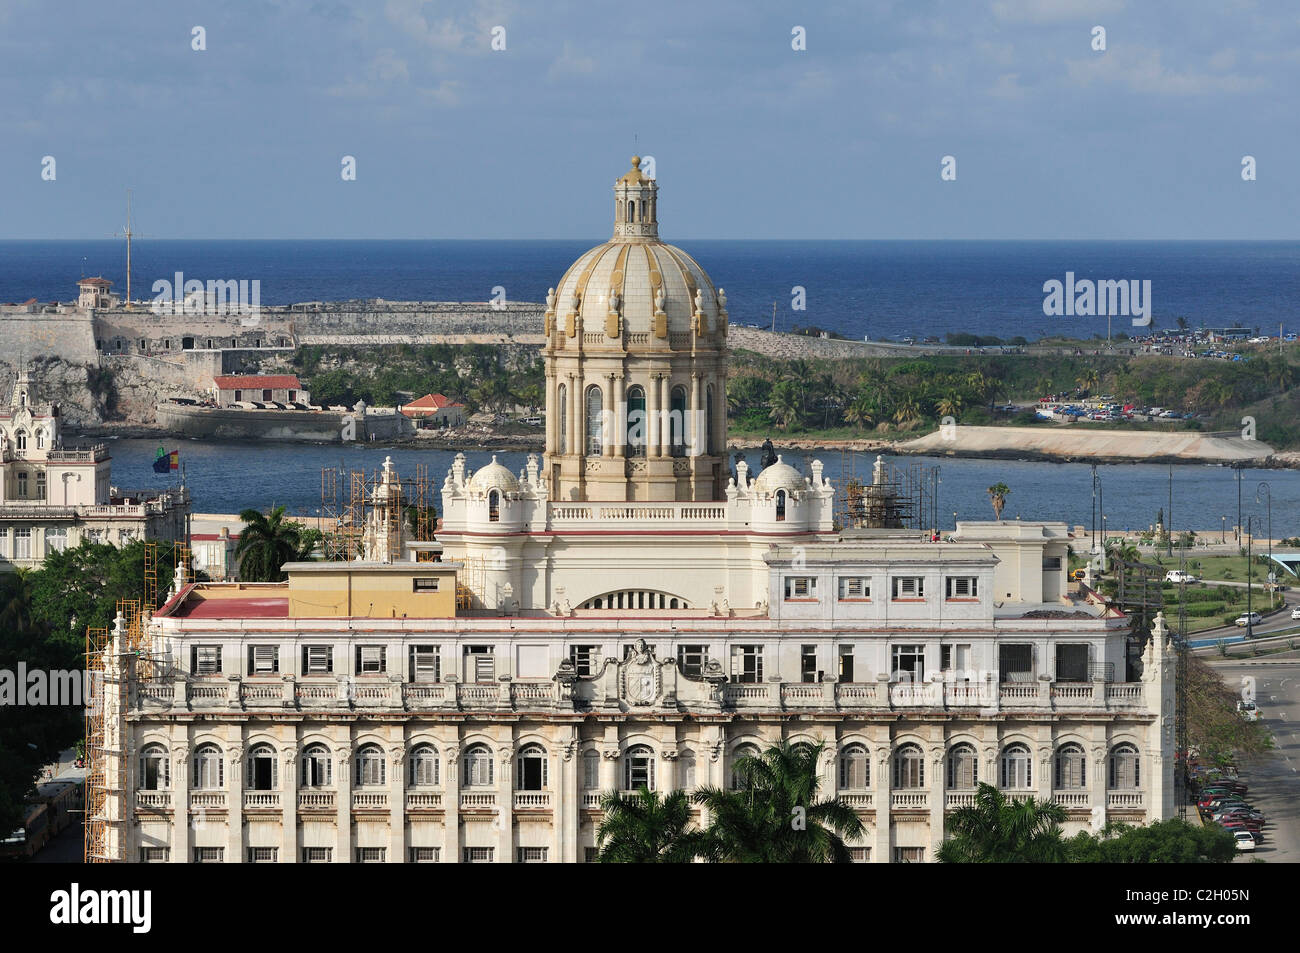 La Habana. Cuba. El Palacio Presidencial que ahora alberga el Museo de la Revolución / Museo de la Revolución. Foto de stock